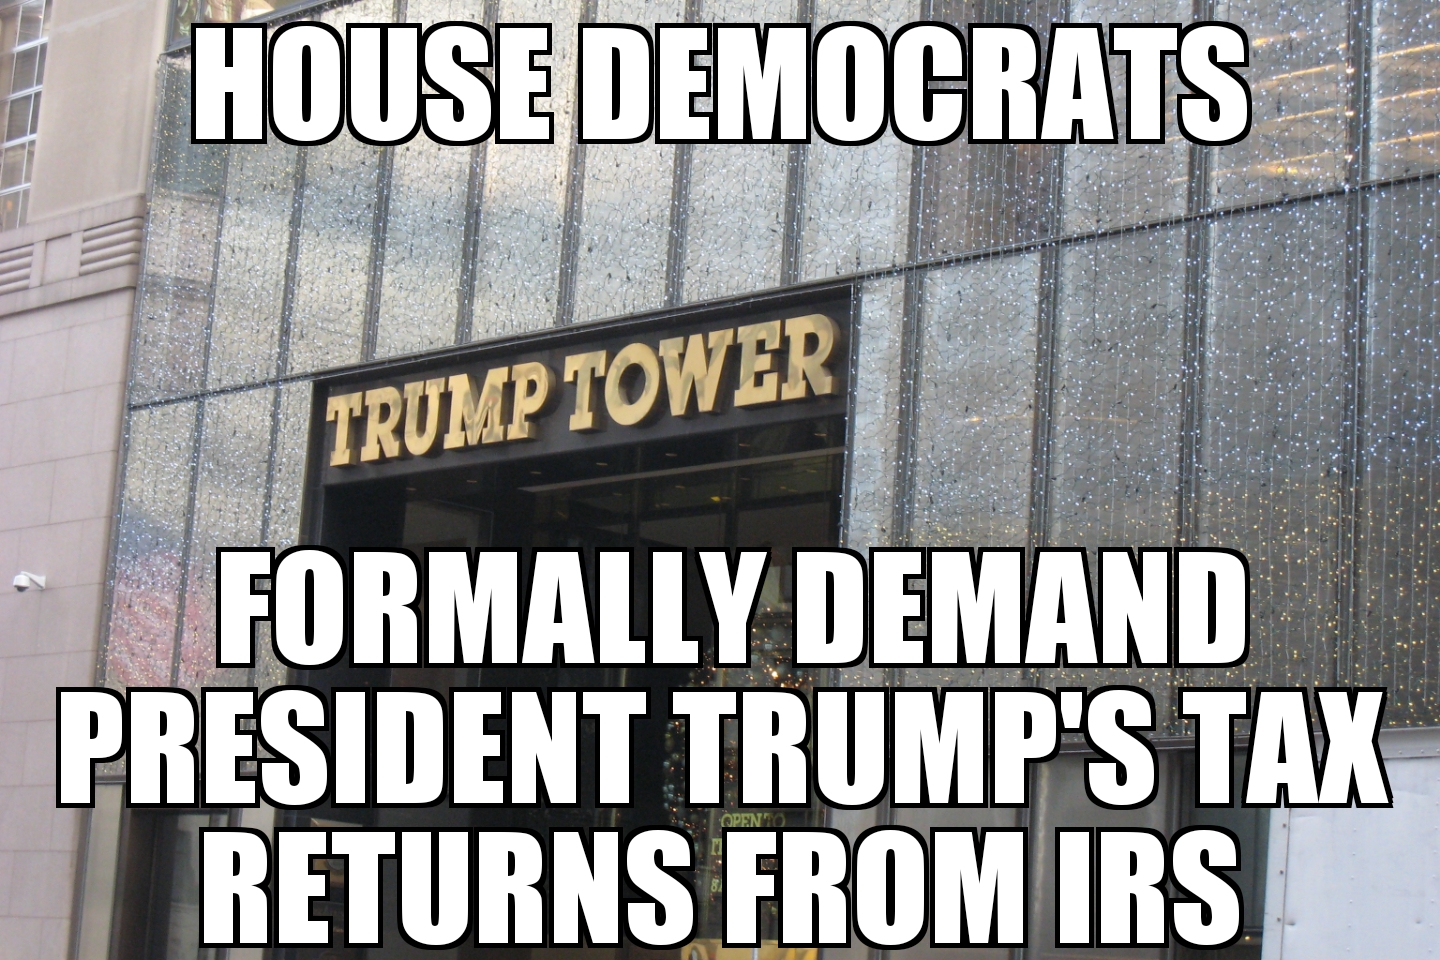 House Democrats demand Trump tax returns